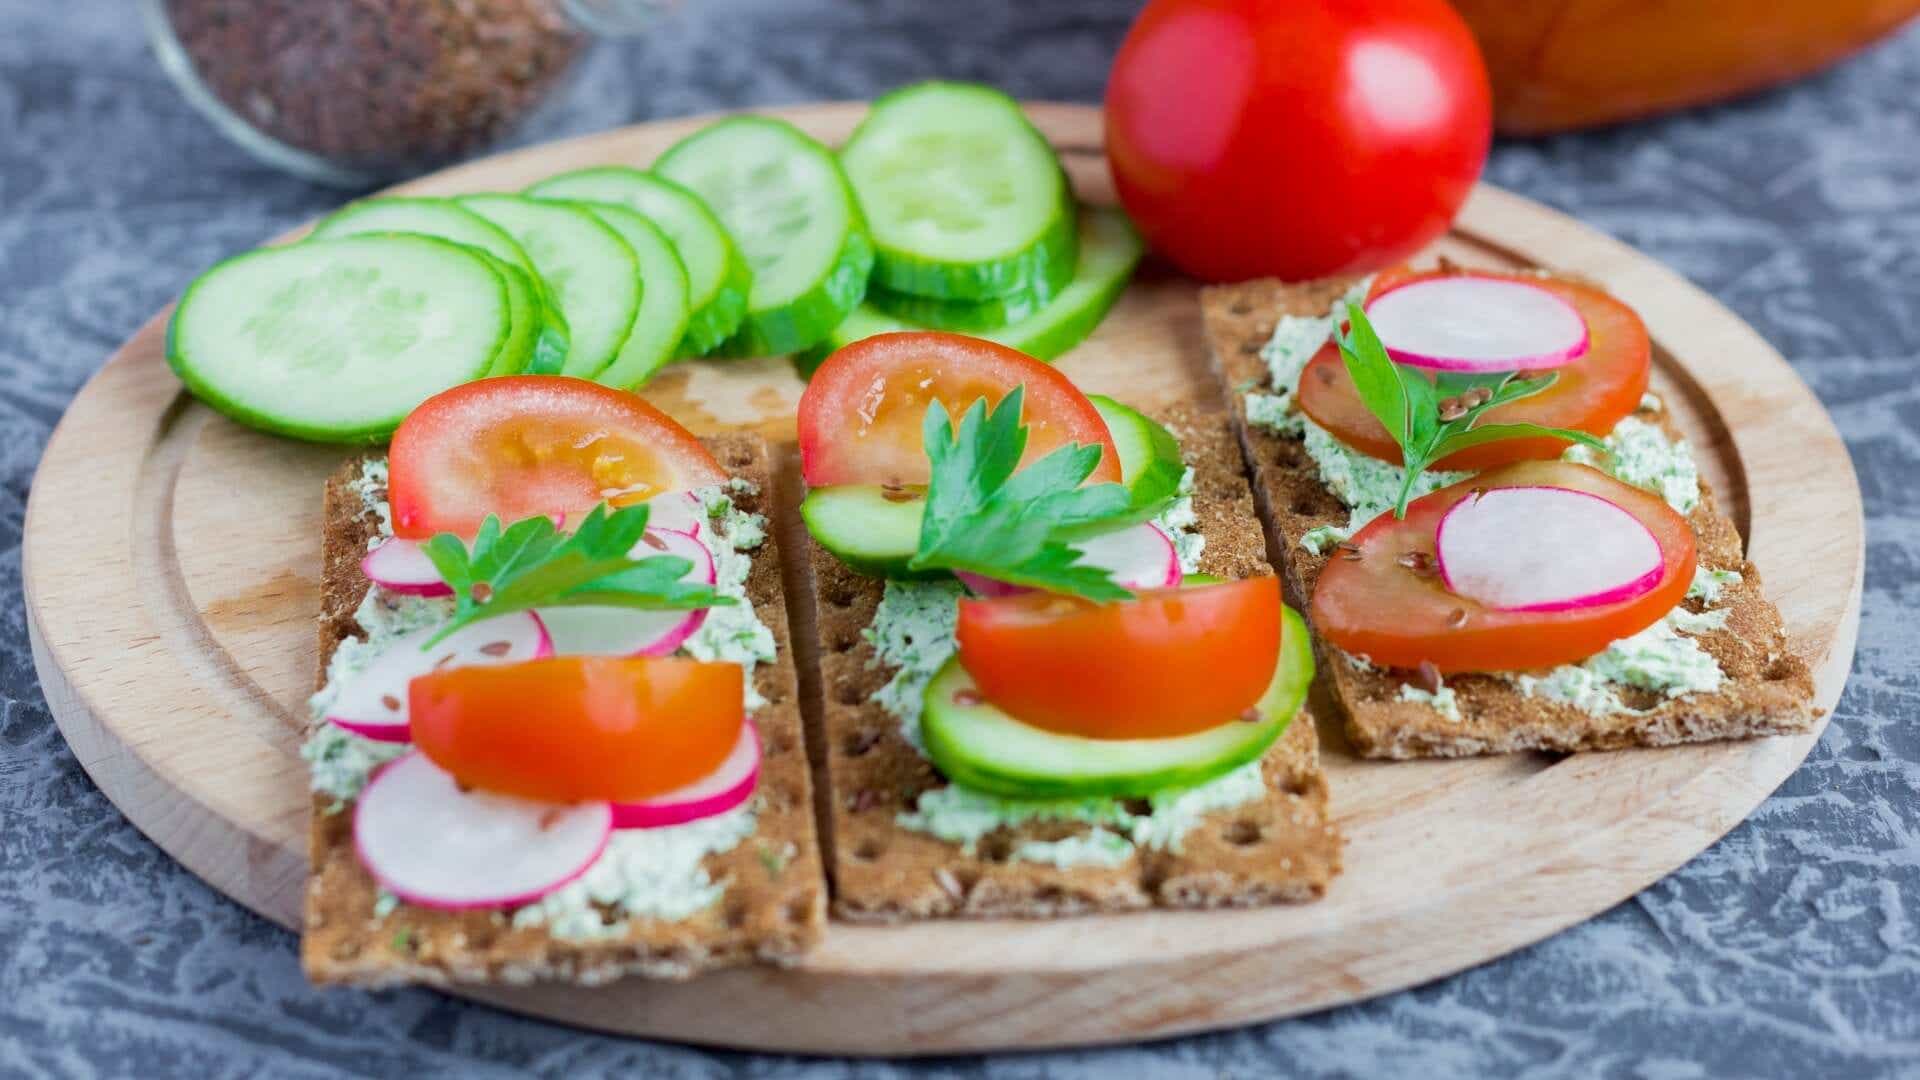 Psoriasis Tipps für Abendessen - Brot mit Tomaten und Gurken